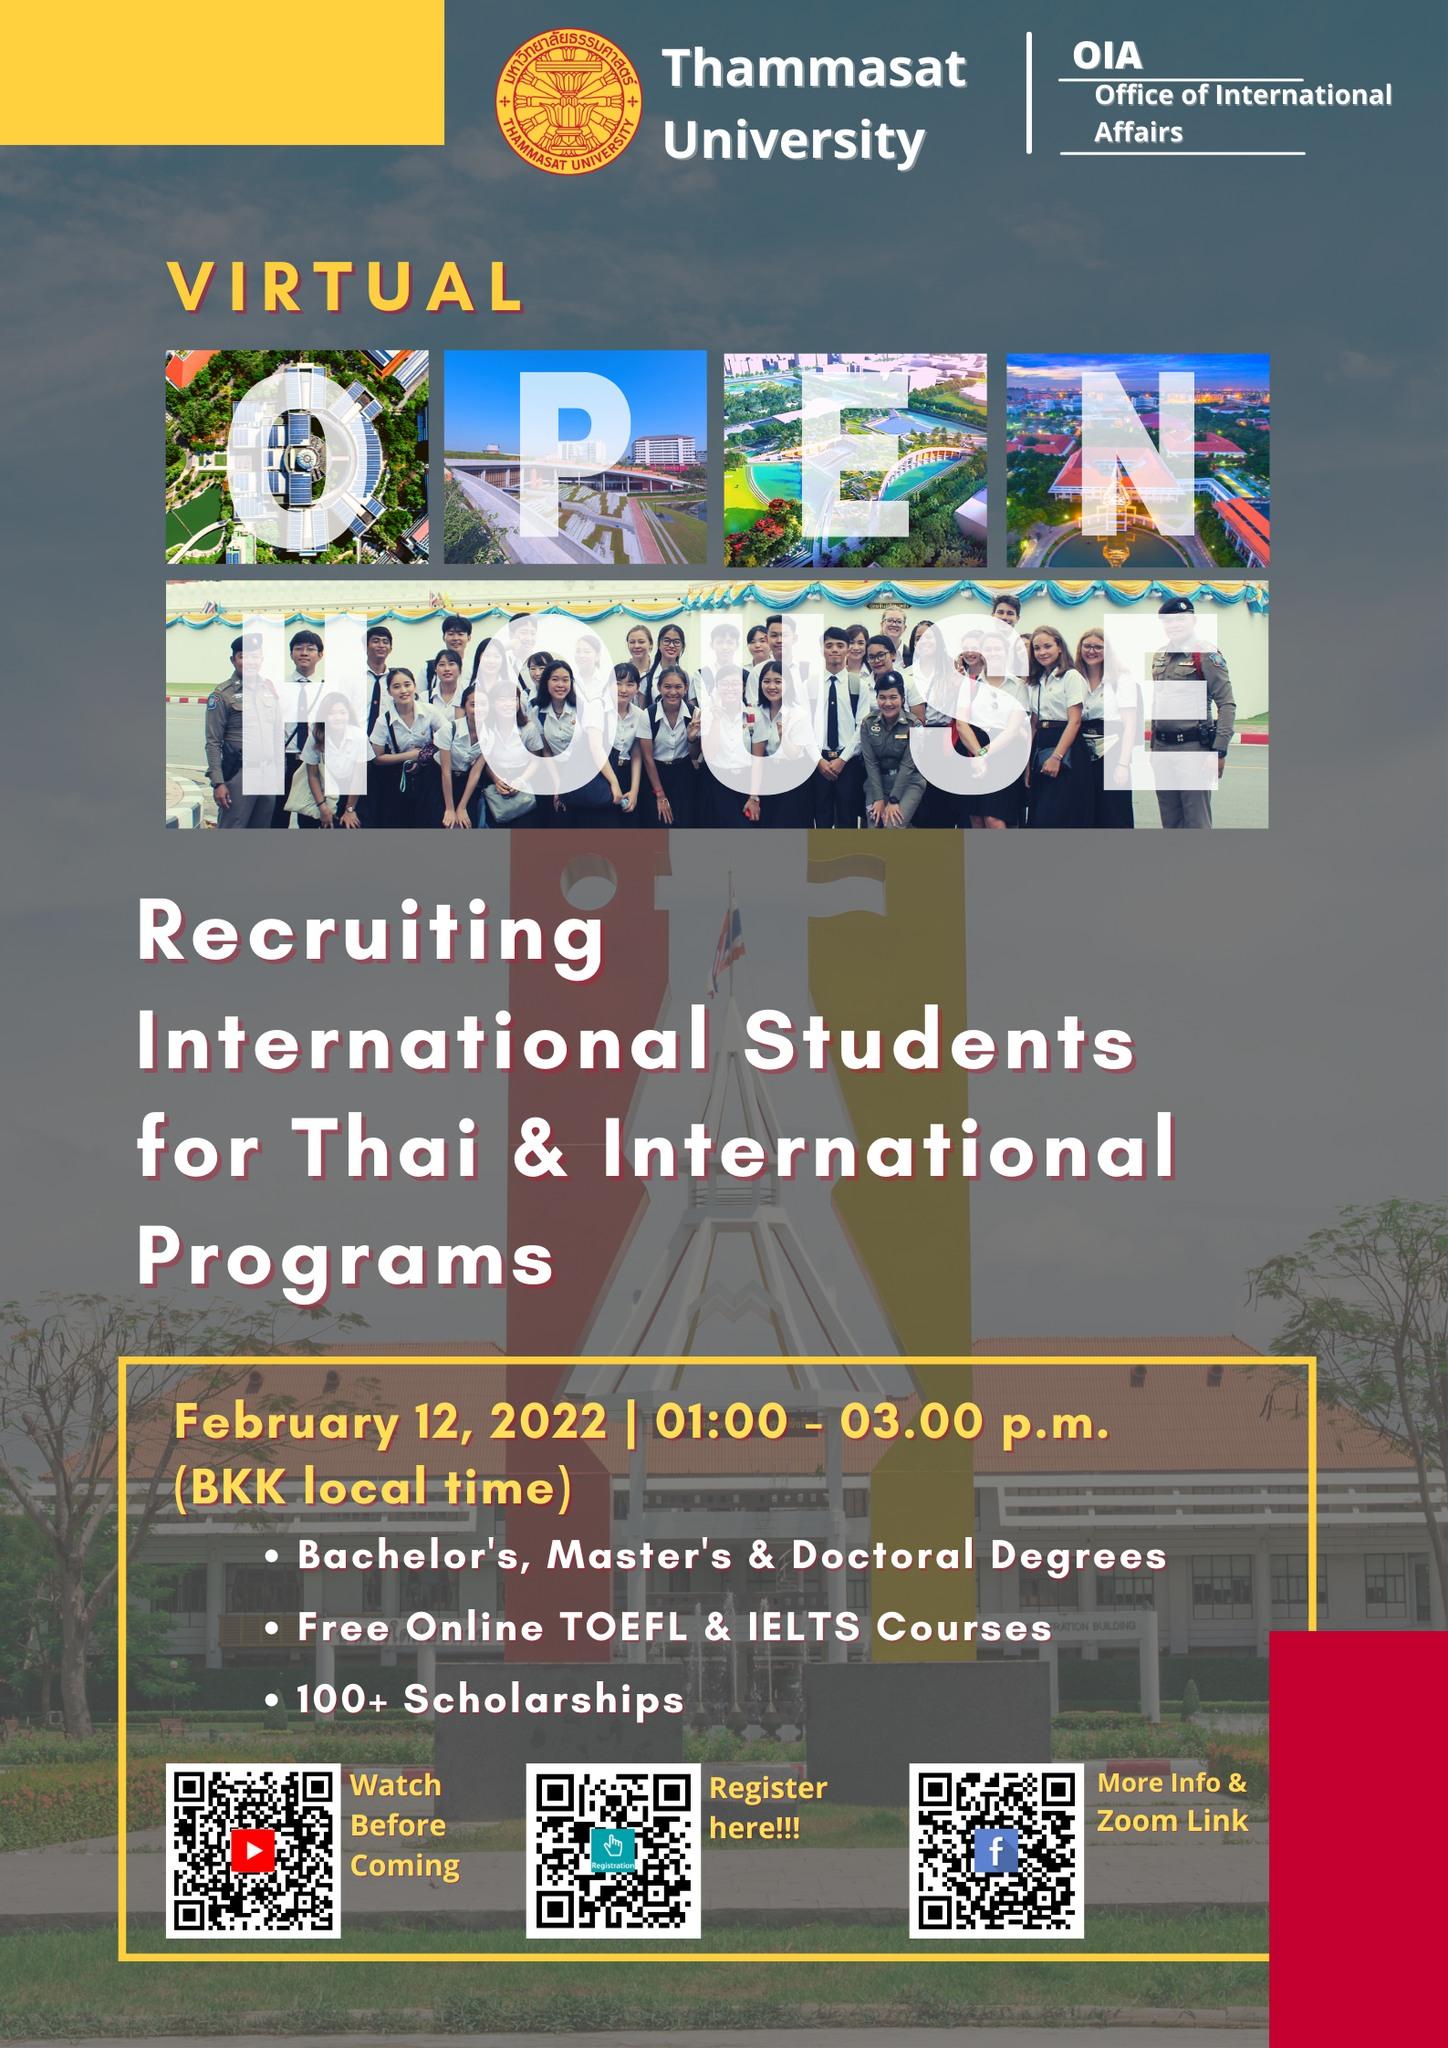 Thammasat University Virtual Open House on Feb 12, 2022